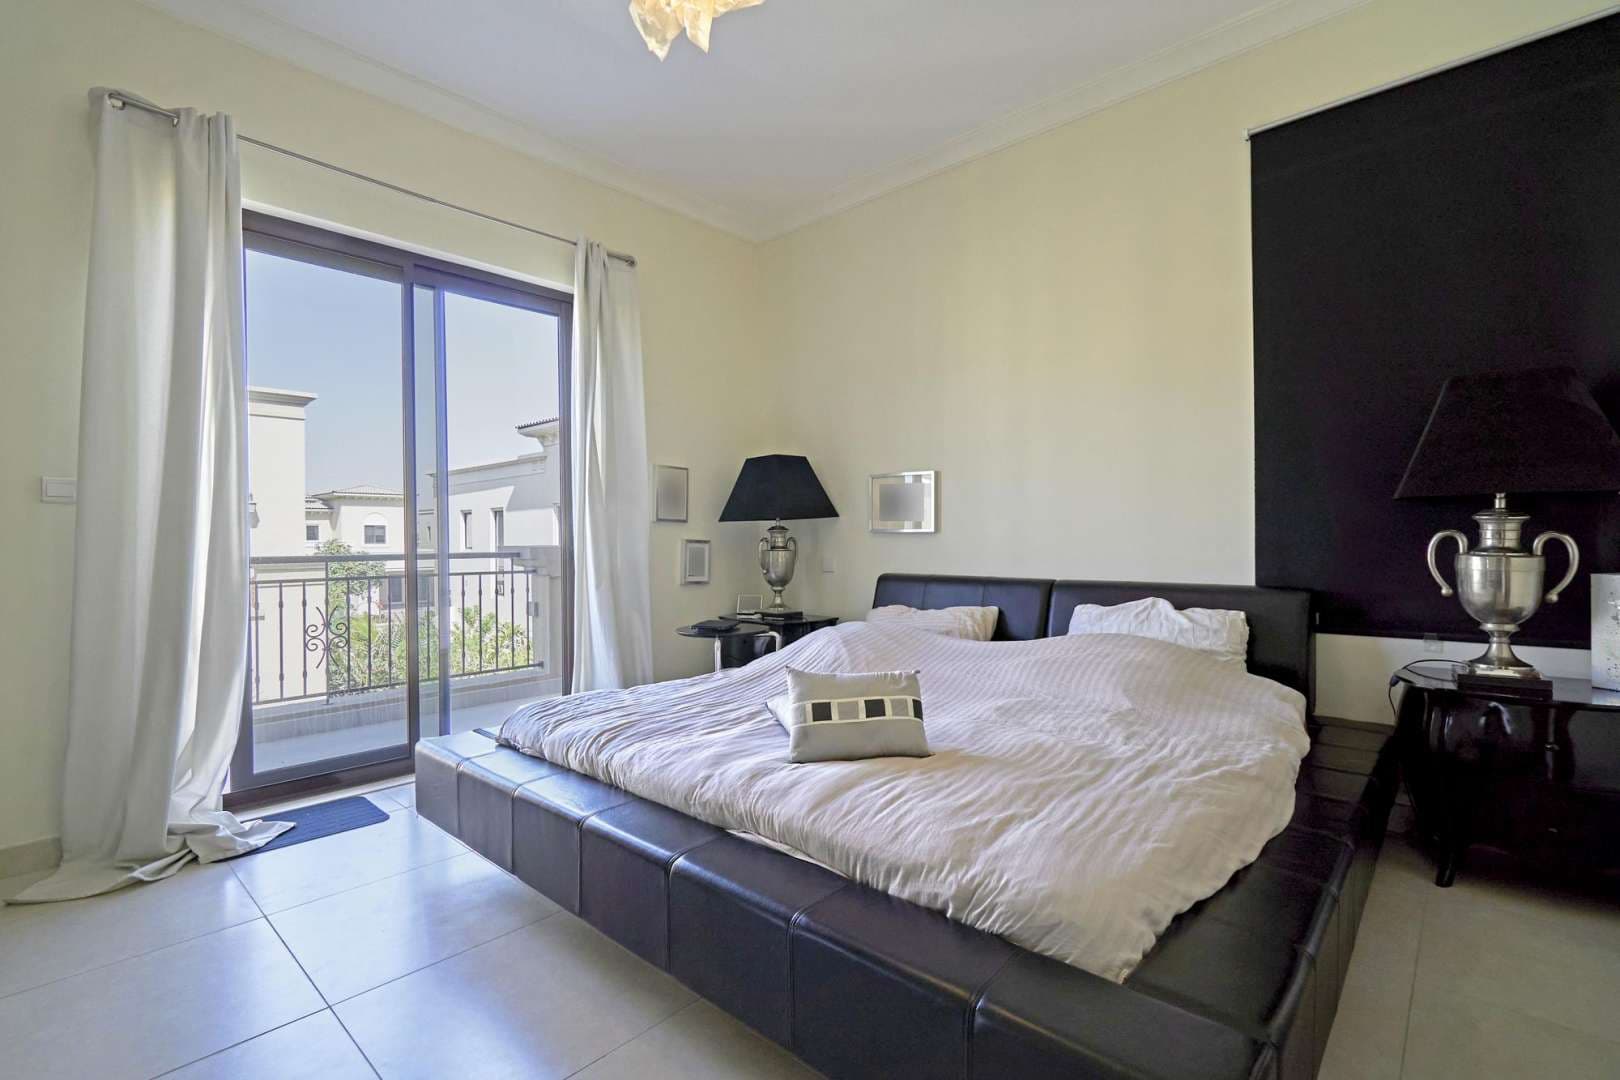 5 Bedroom Villa For Rent Palma Lp05814 1331e89b24847300.jpg